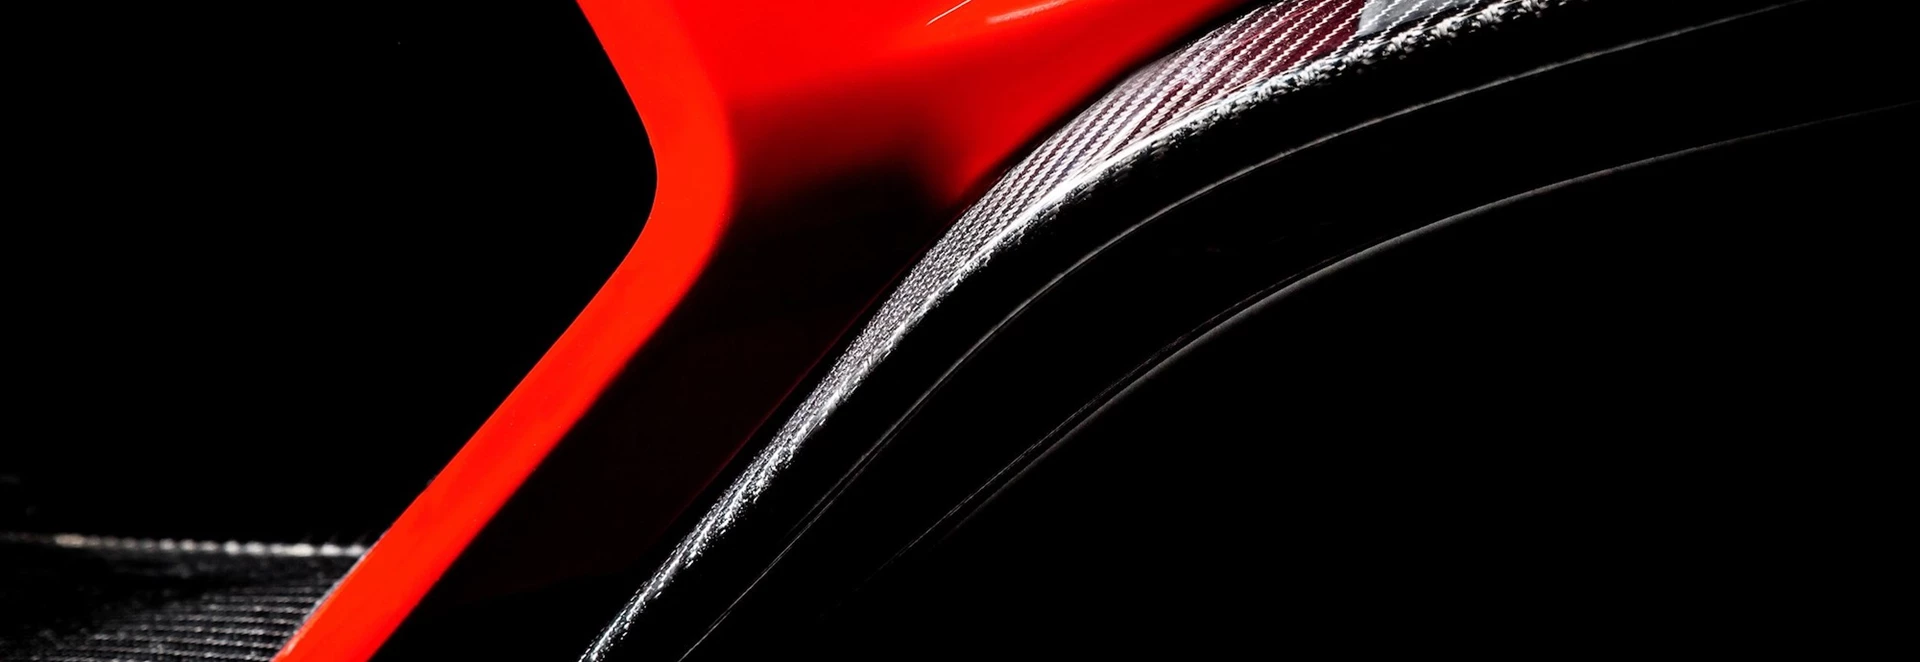 Zenvo hypercar teased ahead of Geneva Motor Show reveal